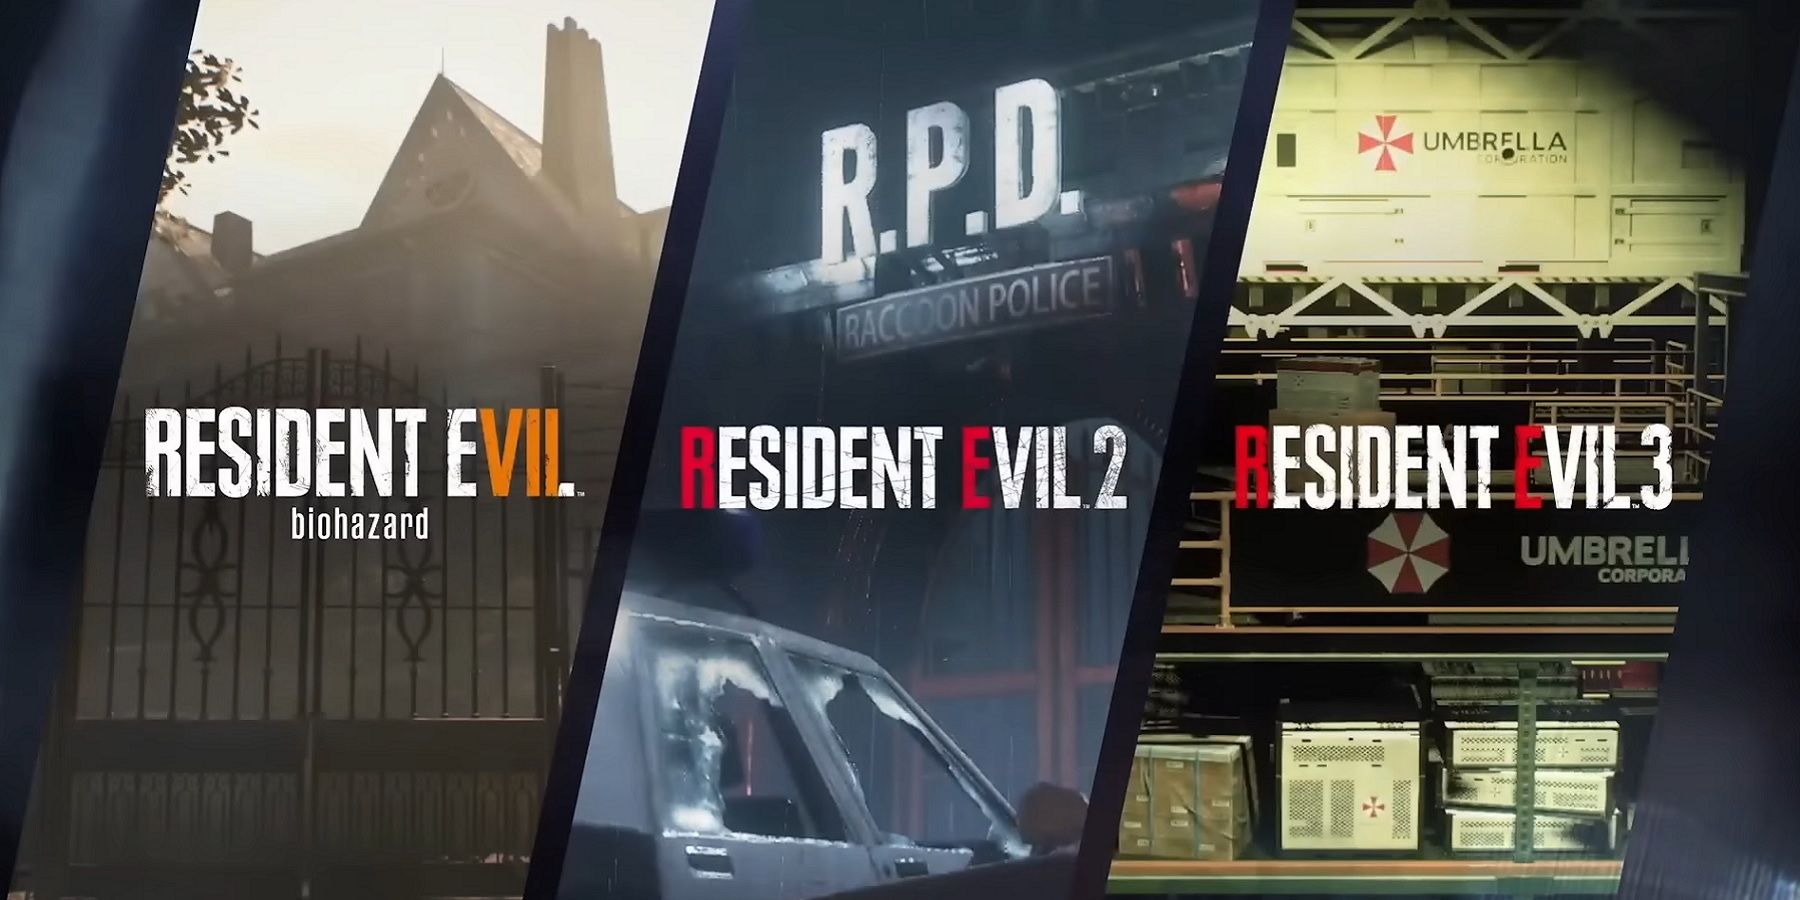 Изображения, показывающие названия из Resident Evil 7, 2 и 3.